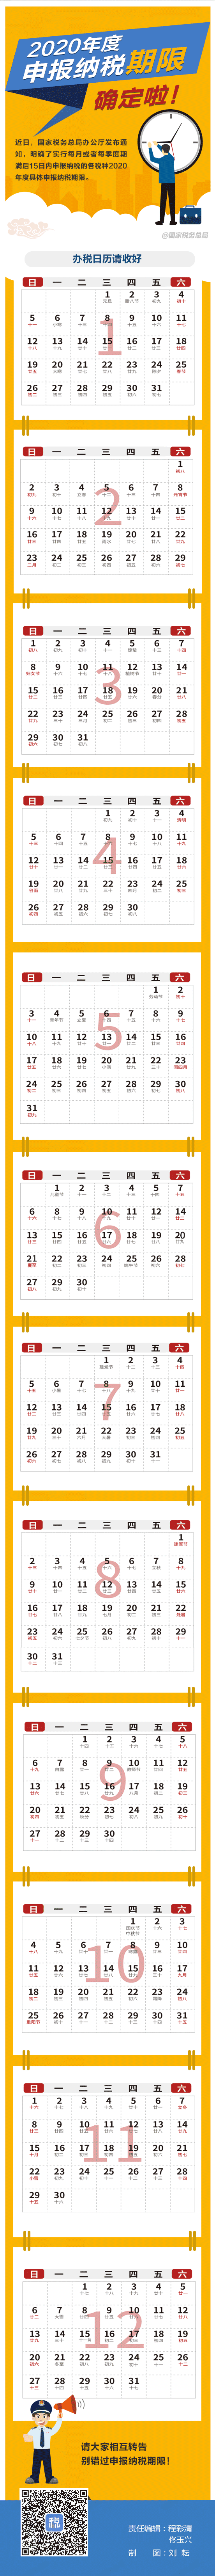 动图版2020全年办税日历 收藏起来够用一整年！